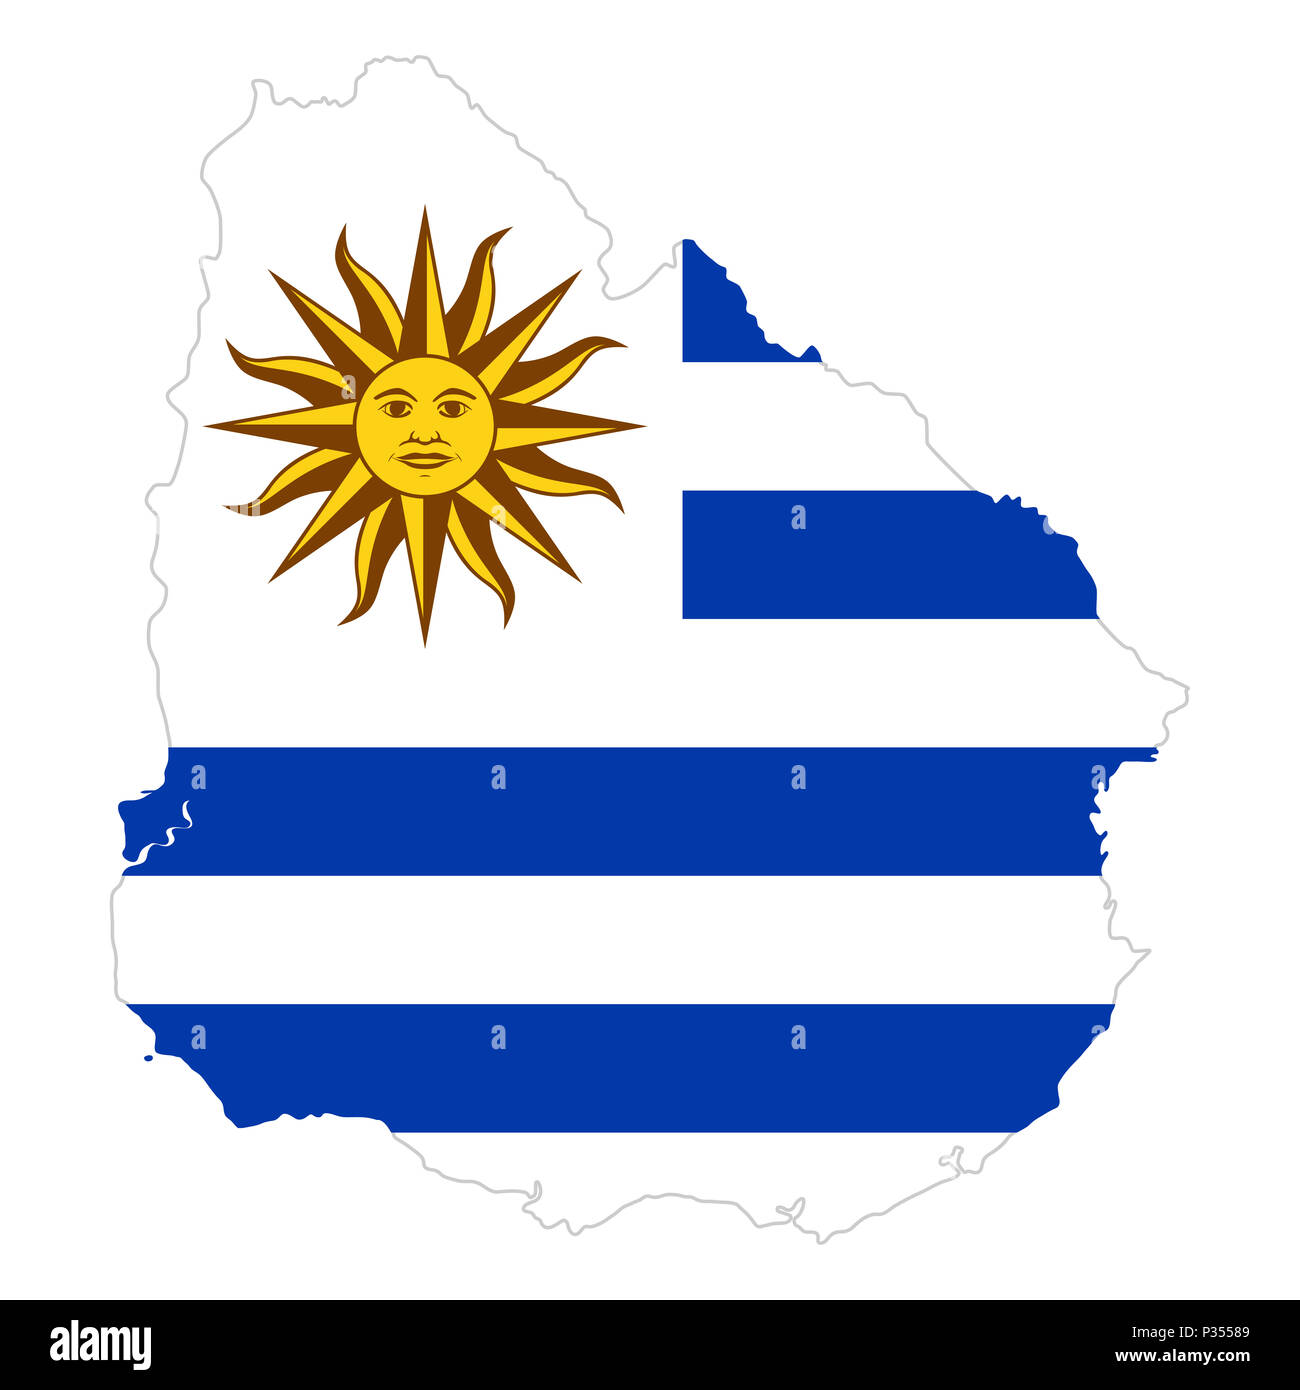 Bandiera Nazionale dell Uruguay con sole di maggio nel paese silhouette. Bandiera del paese con emblema nazionale Sol de Mayo il cantone bianco e bianco e blu. Foto Stock